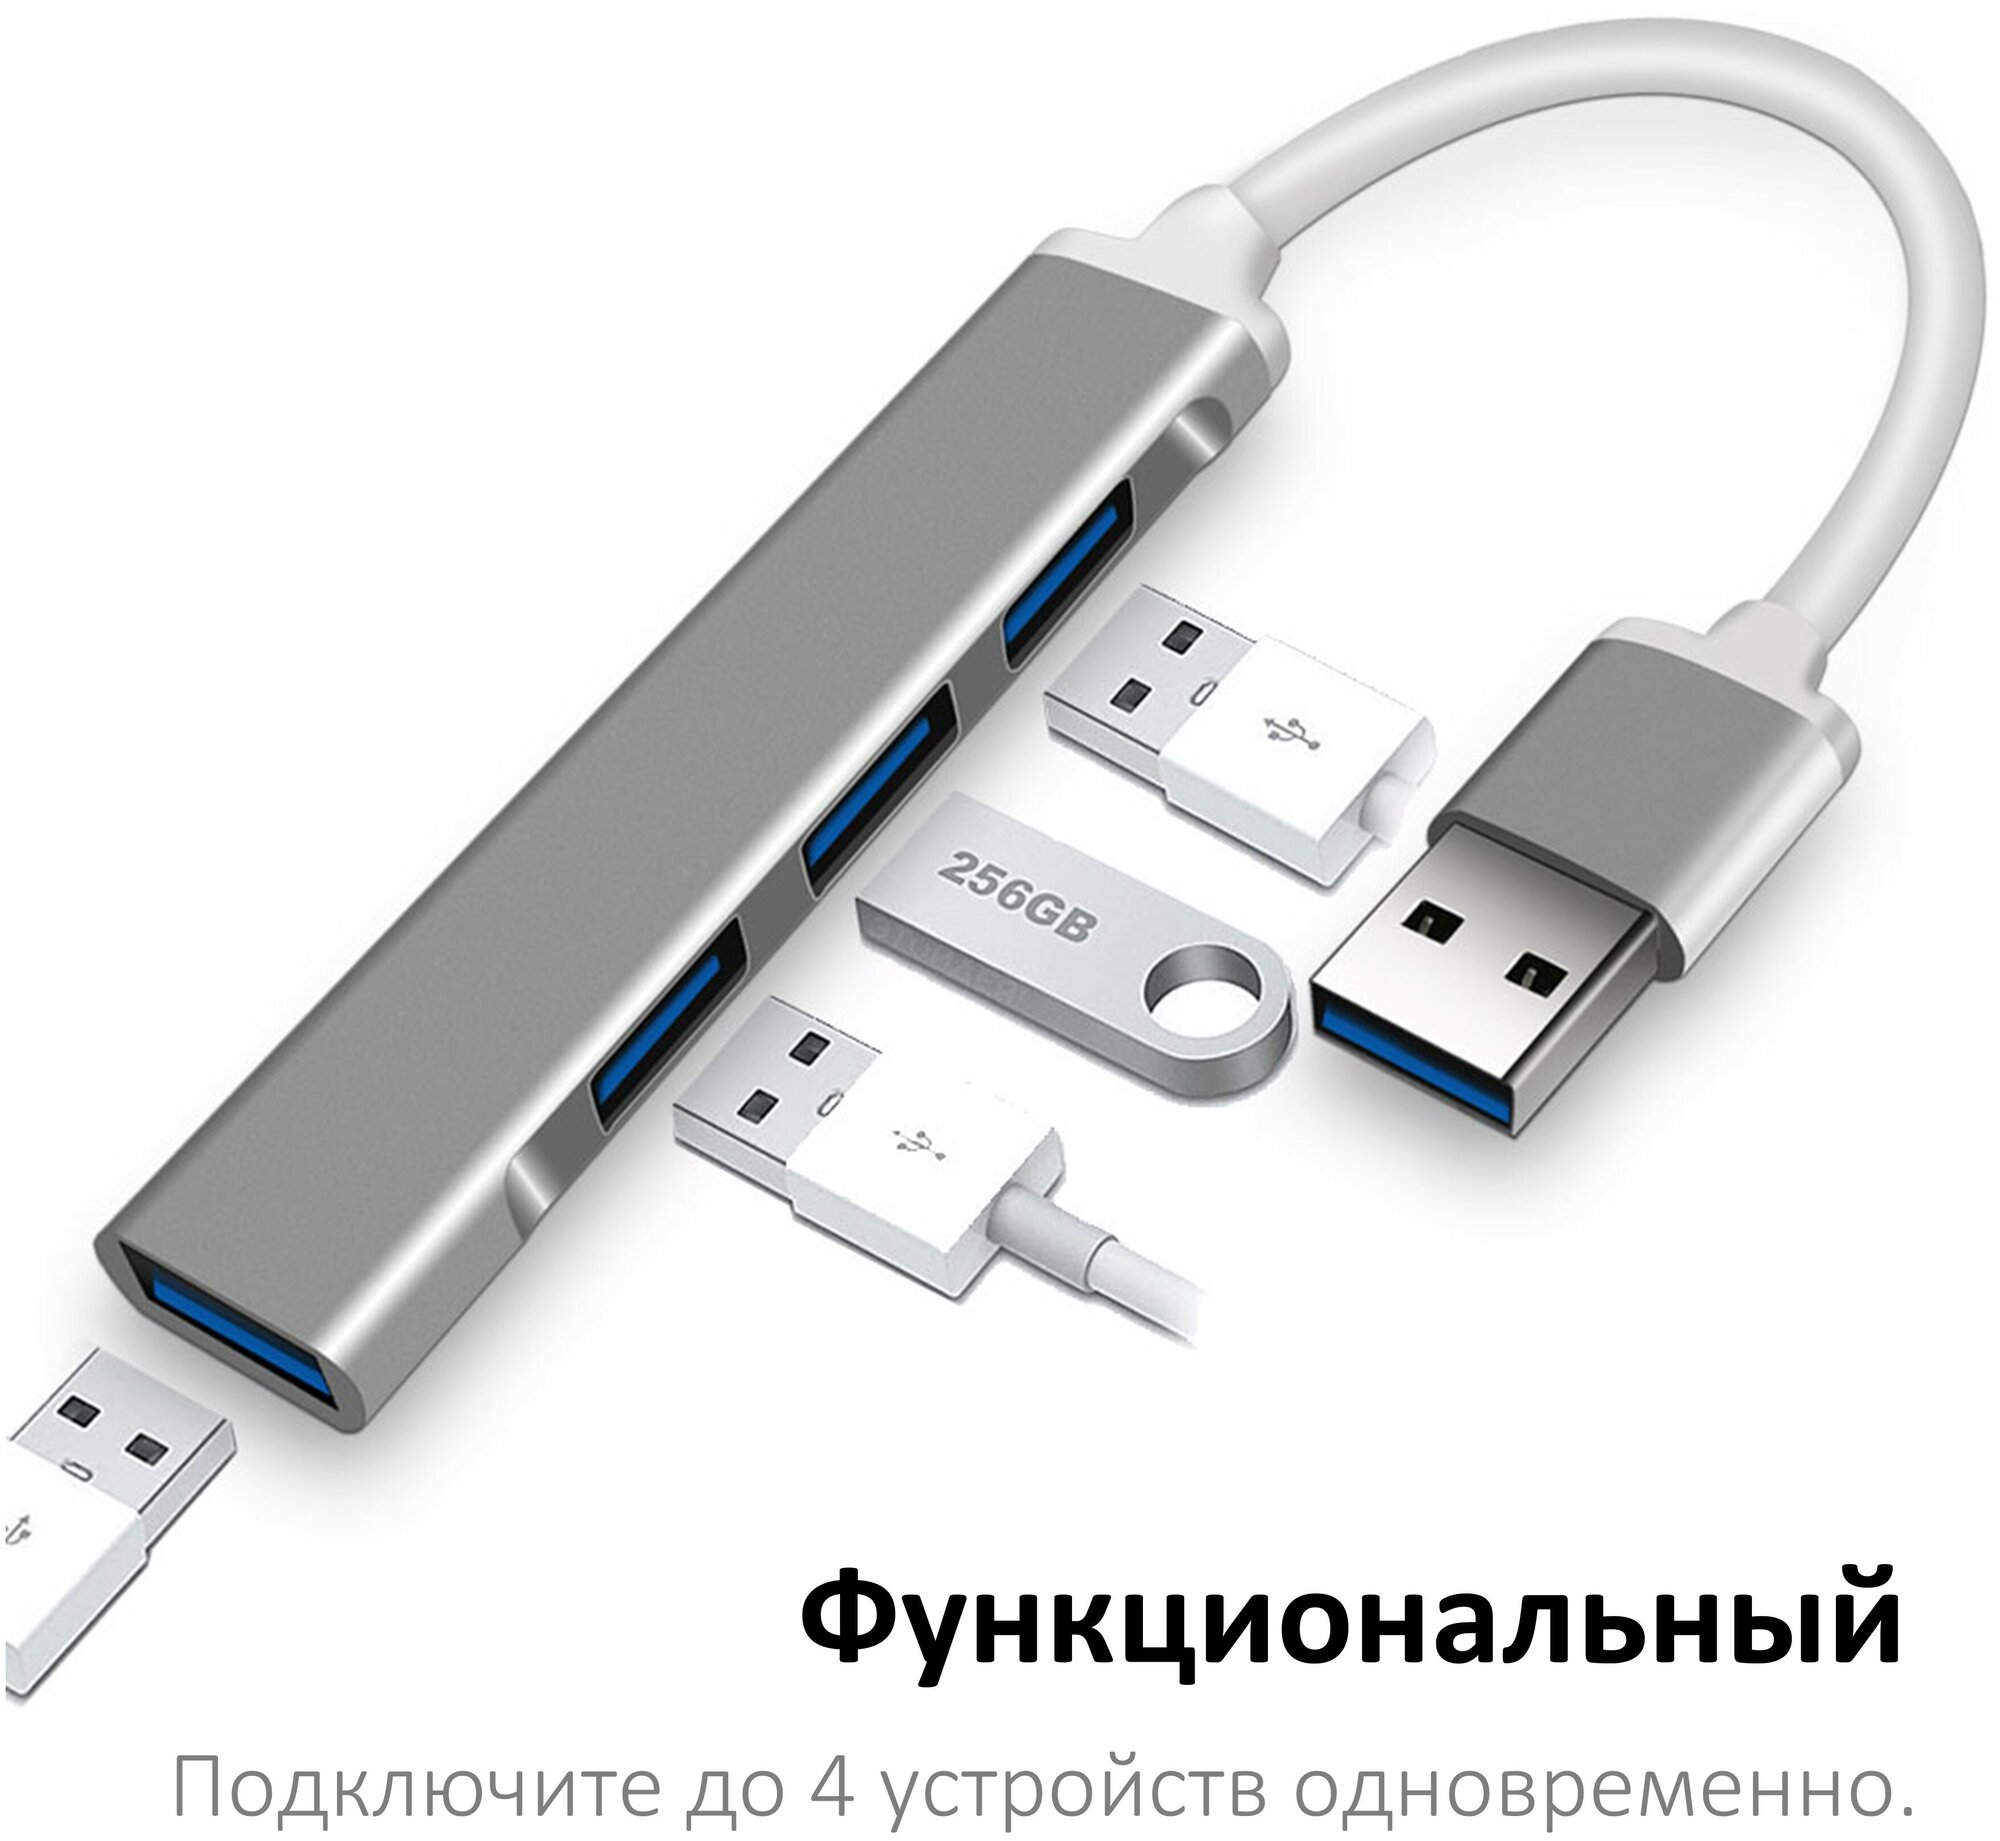 Мини USB хаб на 4 порта (USB 3.0 и 2.0), темно-серый / переходник USB-A для ноутбука / NOBUS